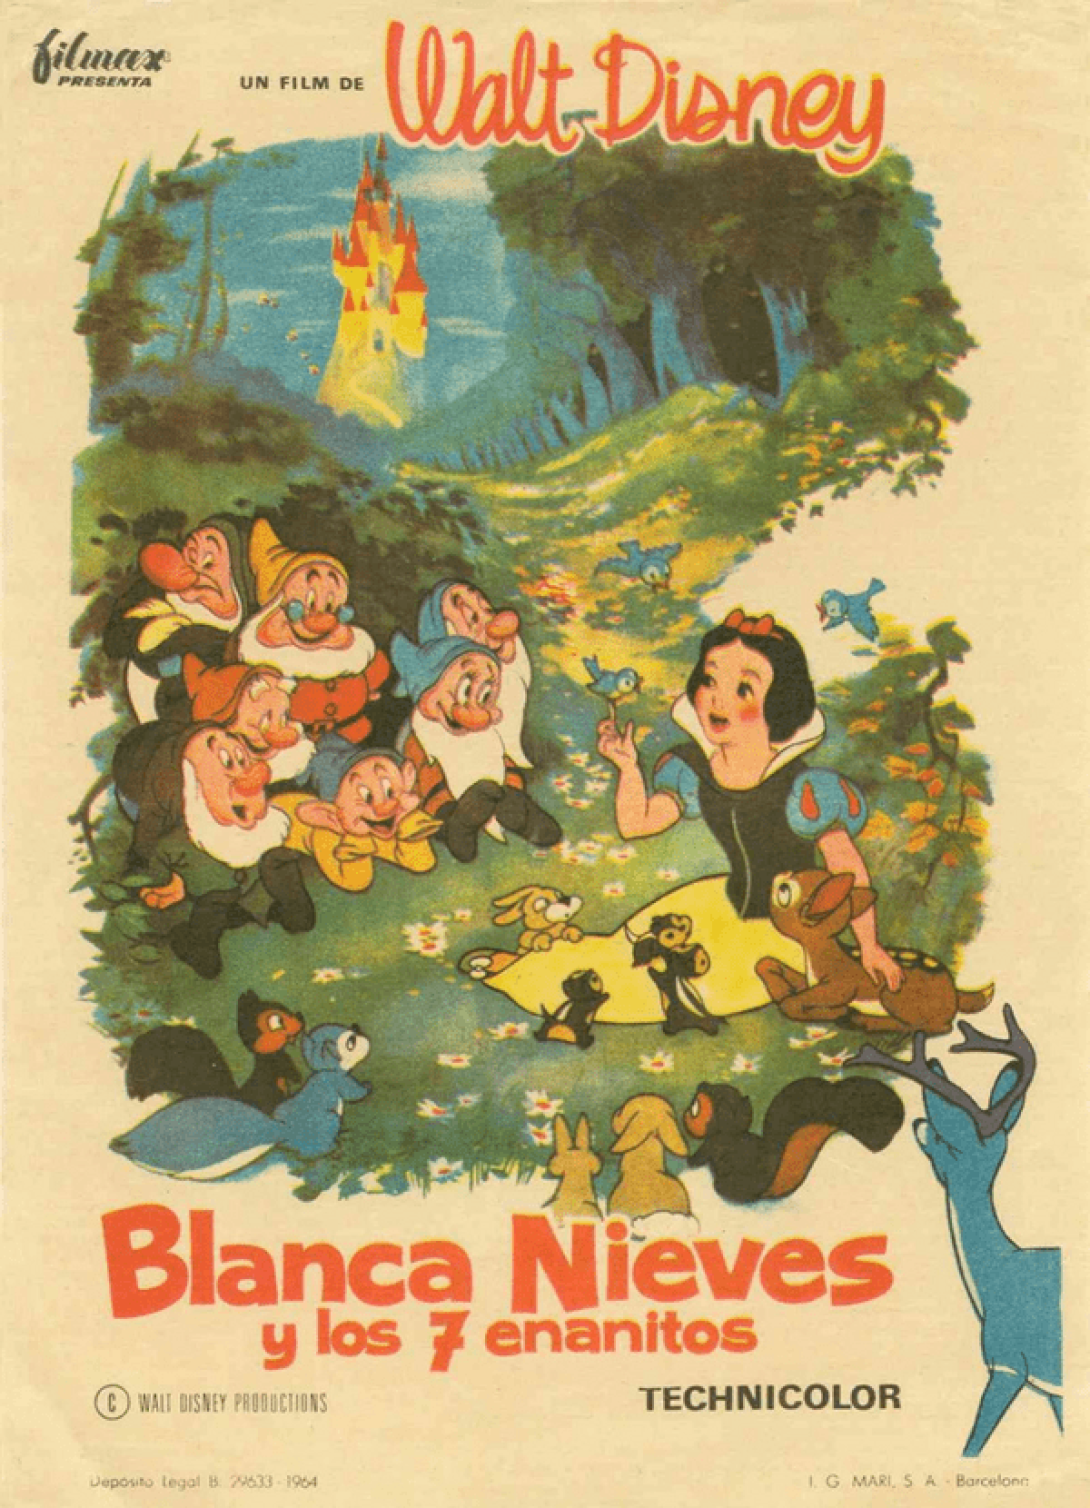 Portada de la película animada Blanca Nieves y los siete enanito, de Walt Disney.